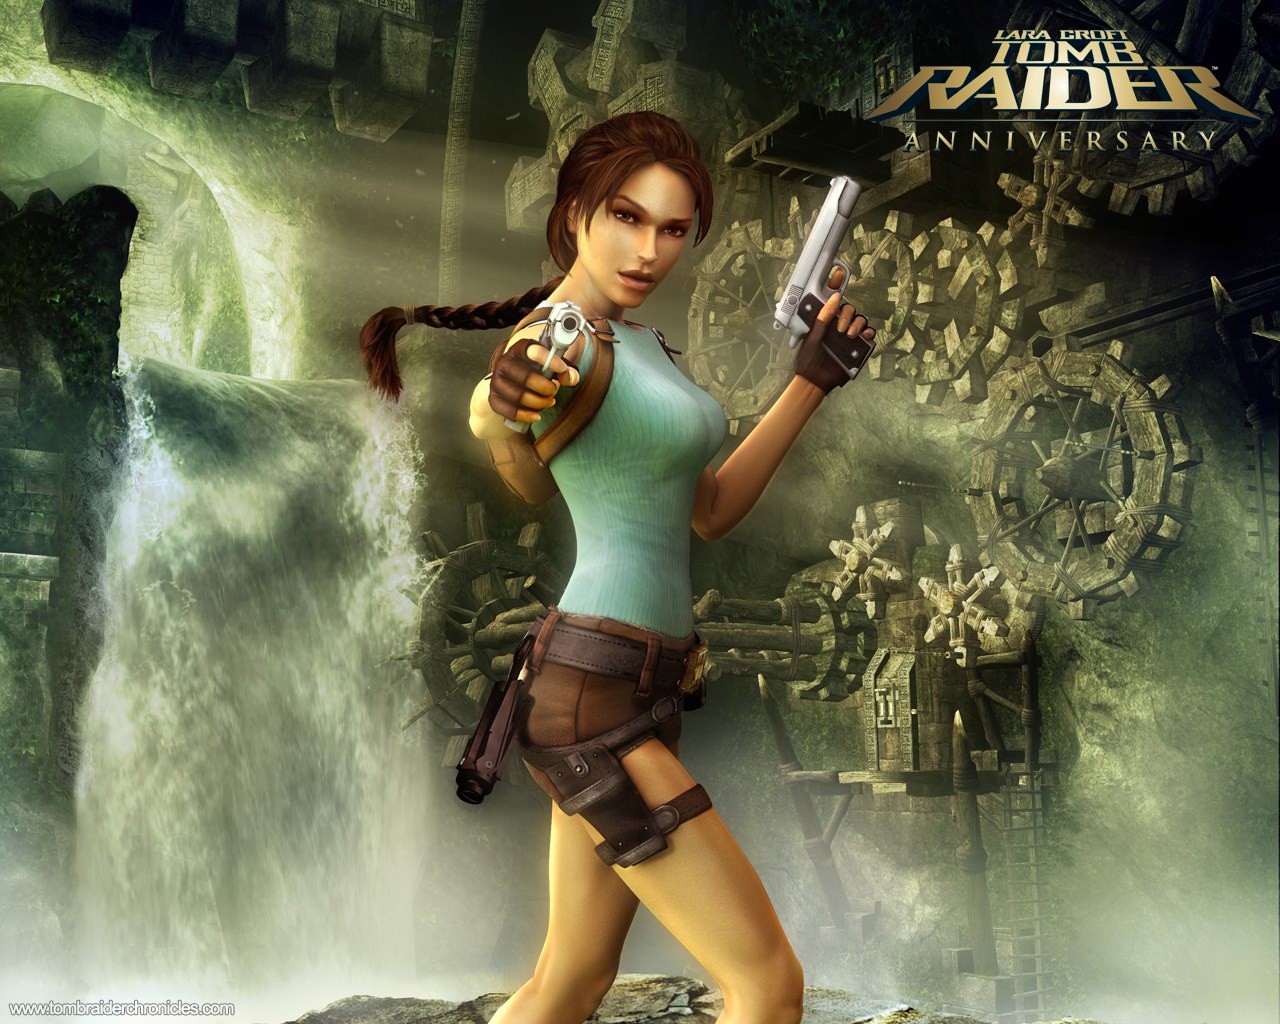 Lara Croft Tomb Raider 10th Anniversary Wallpaper #5 - 1280x1024